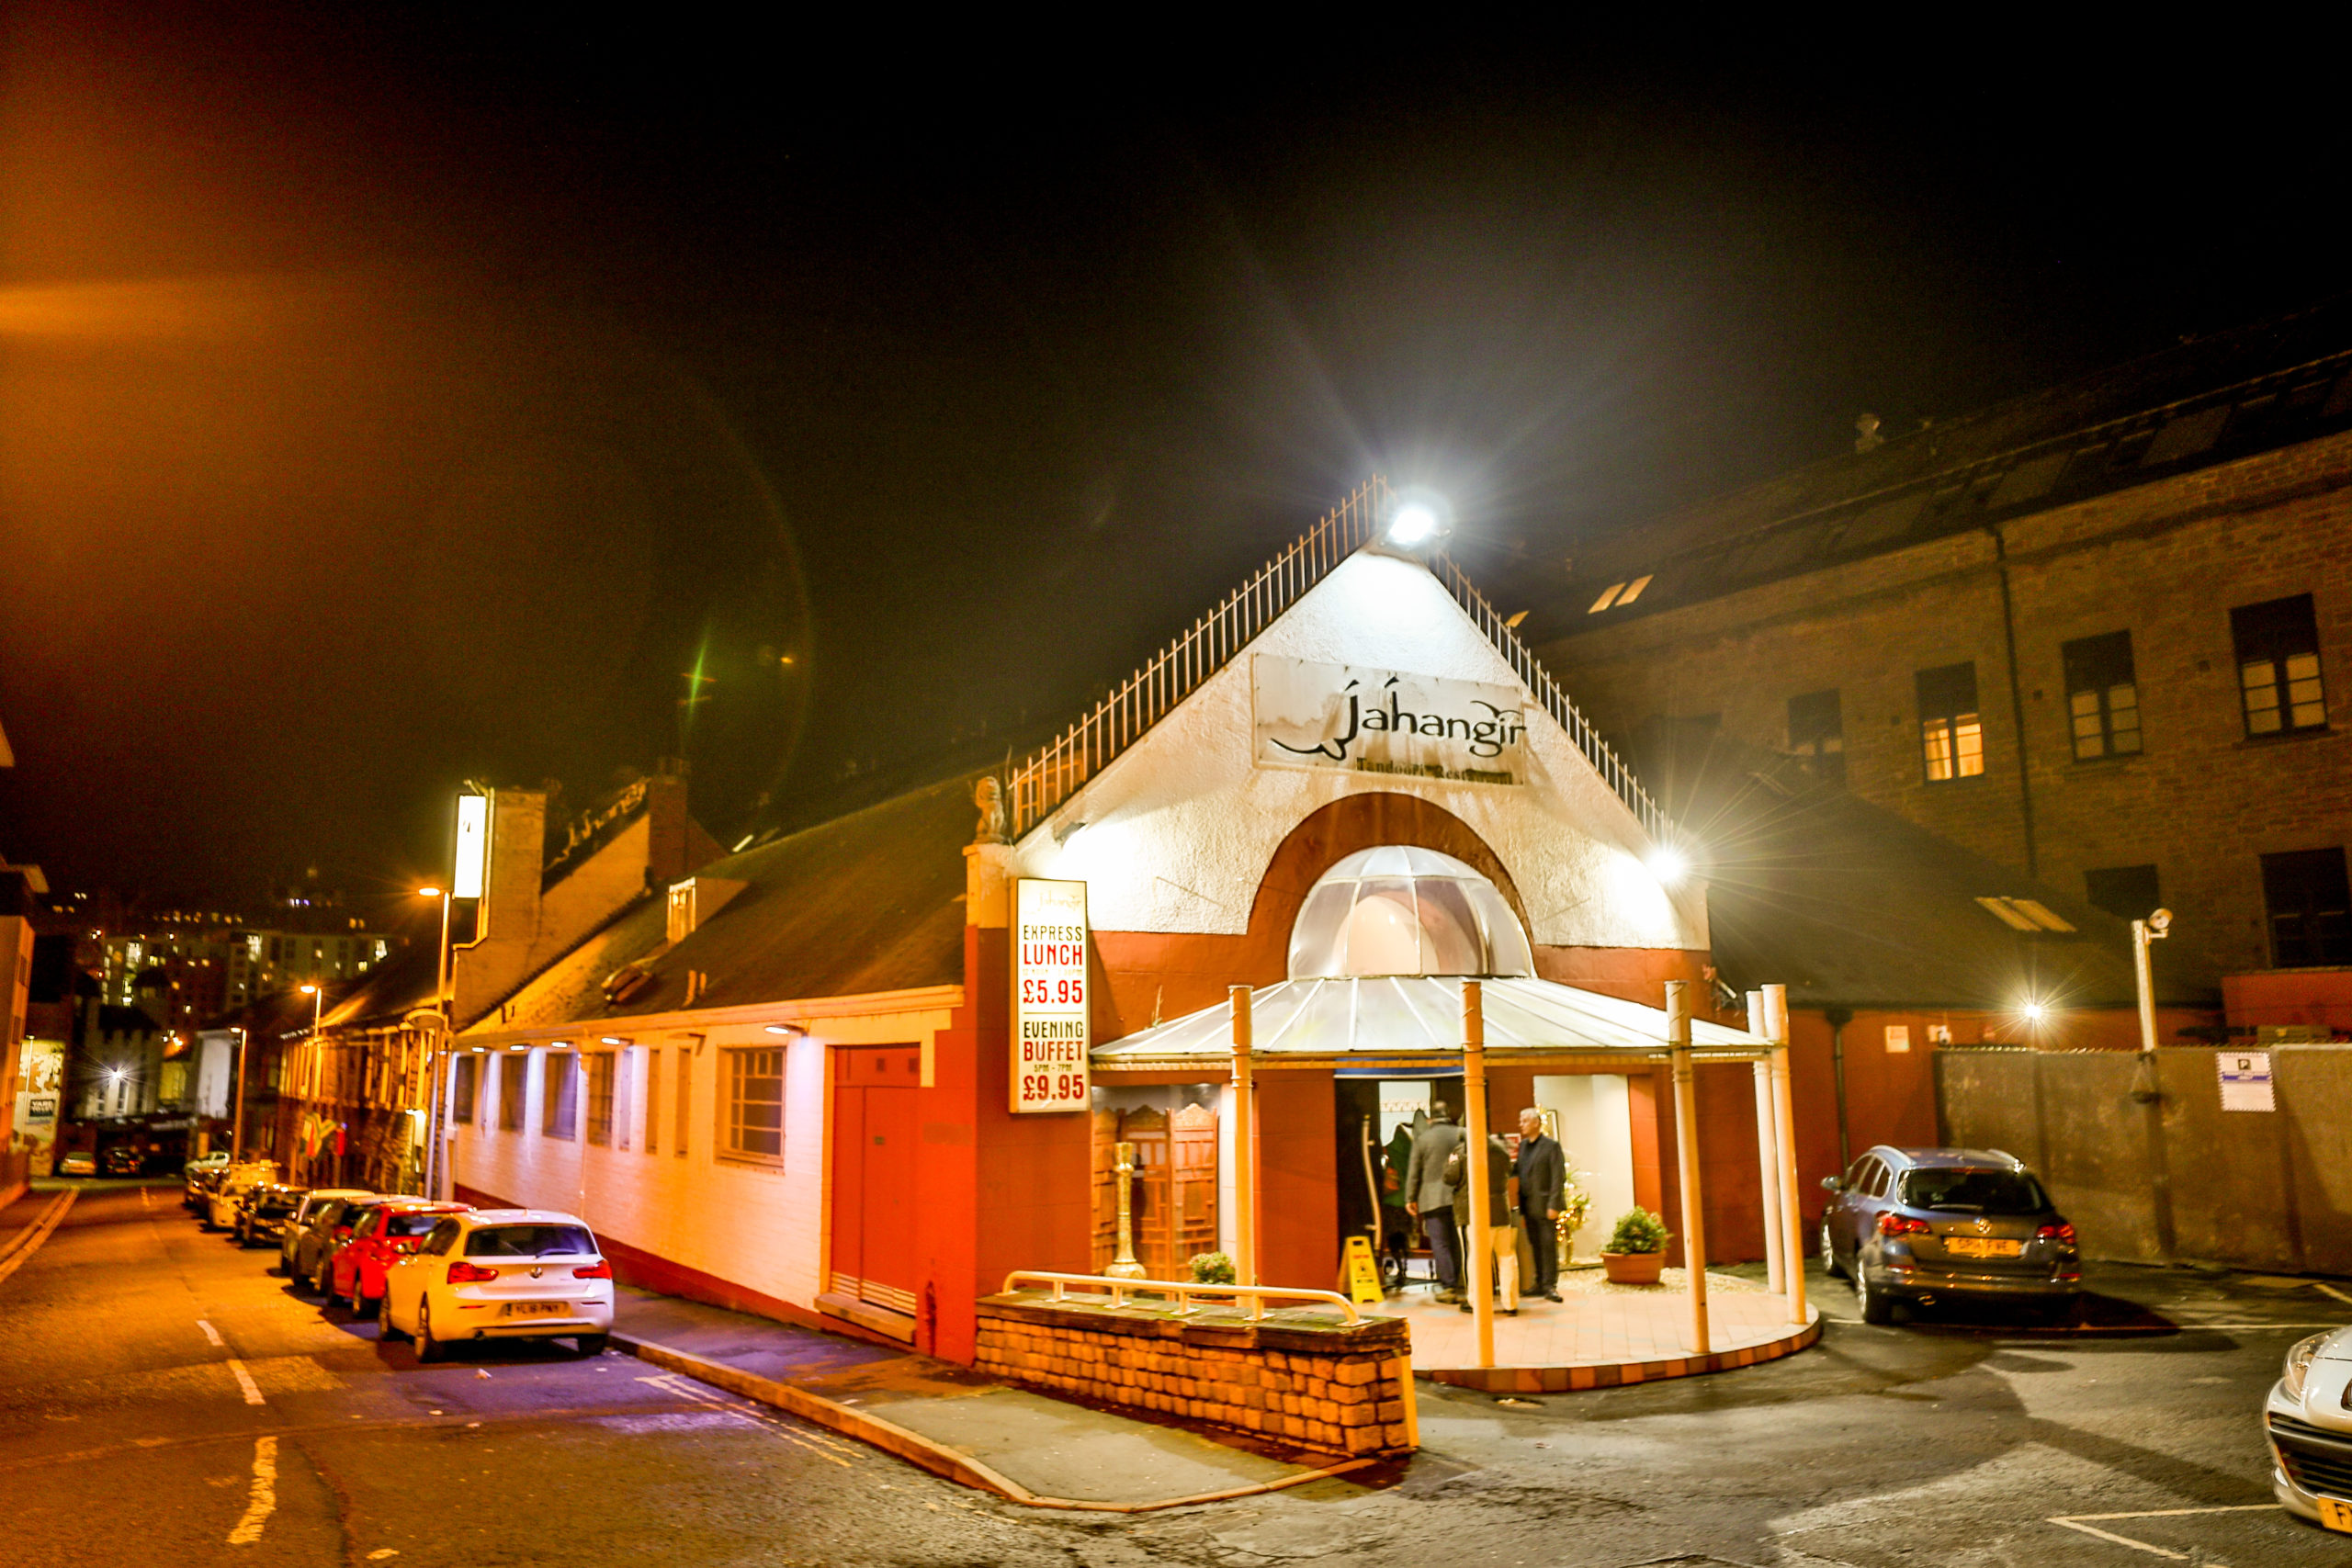 Jahangir Tandoori restaurant, Dundee.